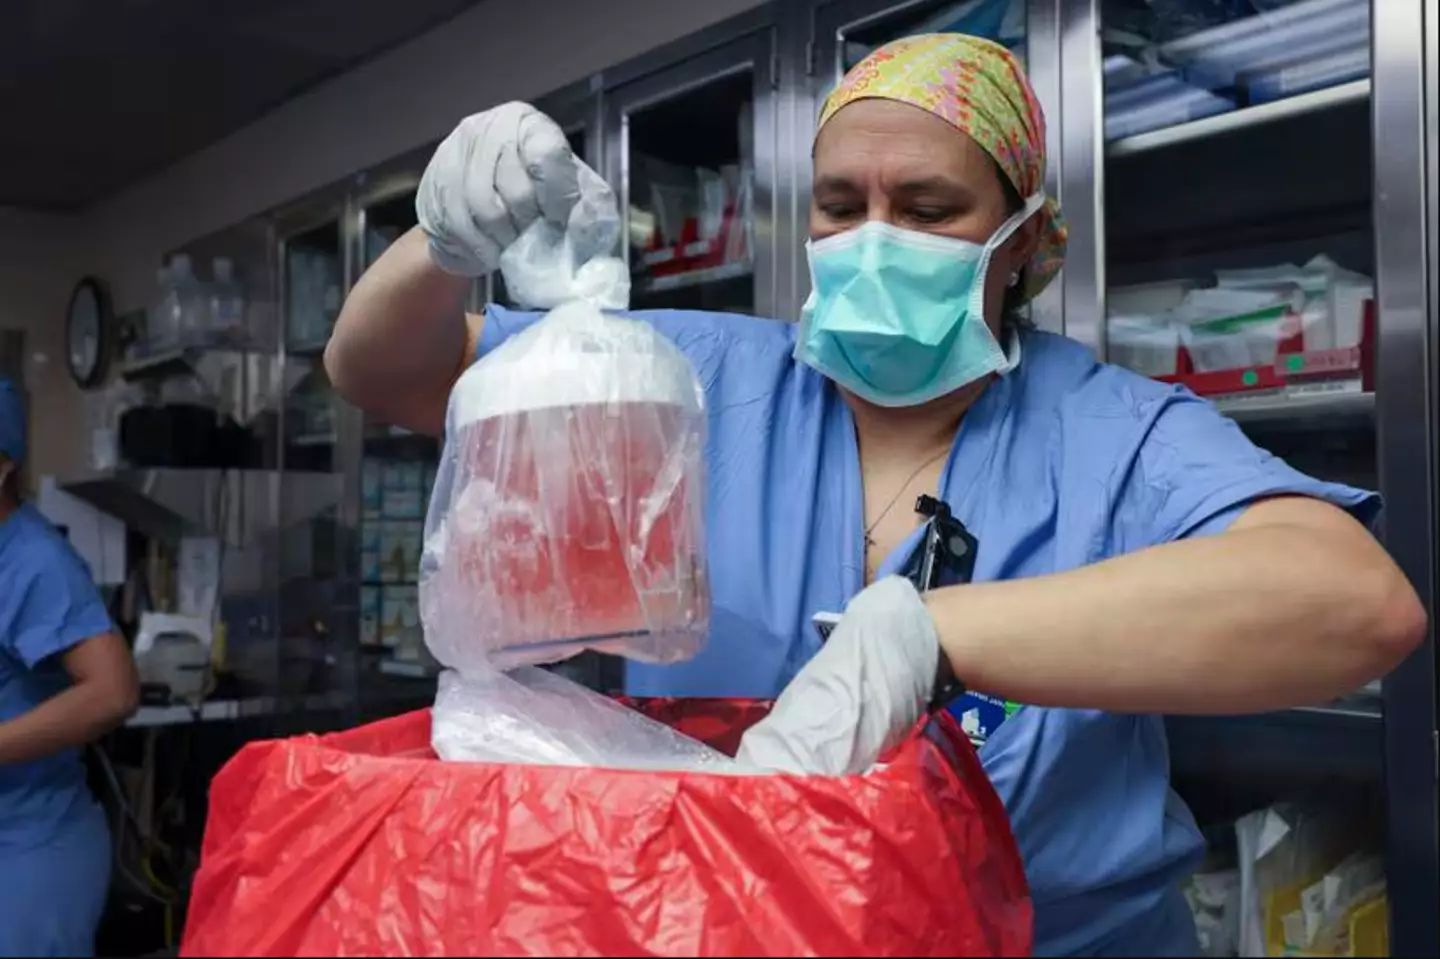 Cirurgiões transplantam rim de porco em ser humano com sucesso pela primeira vez em procedimento inovador